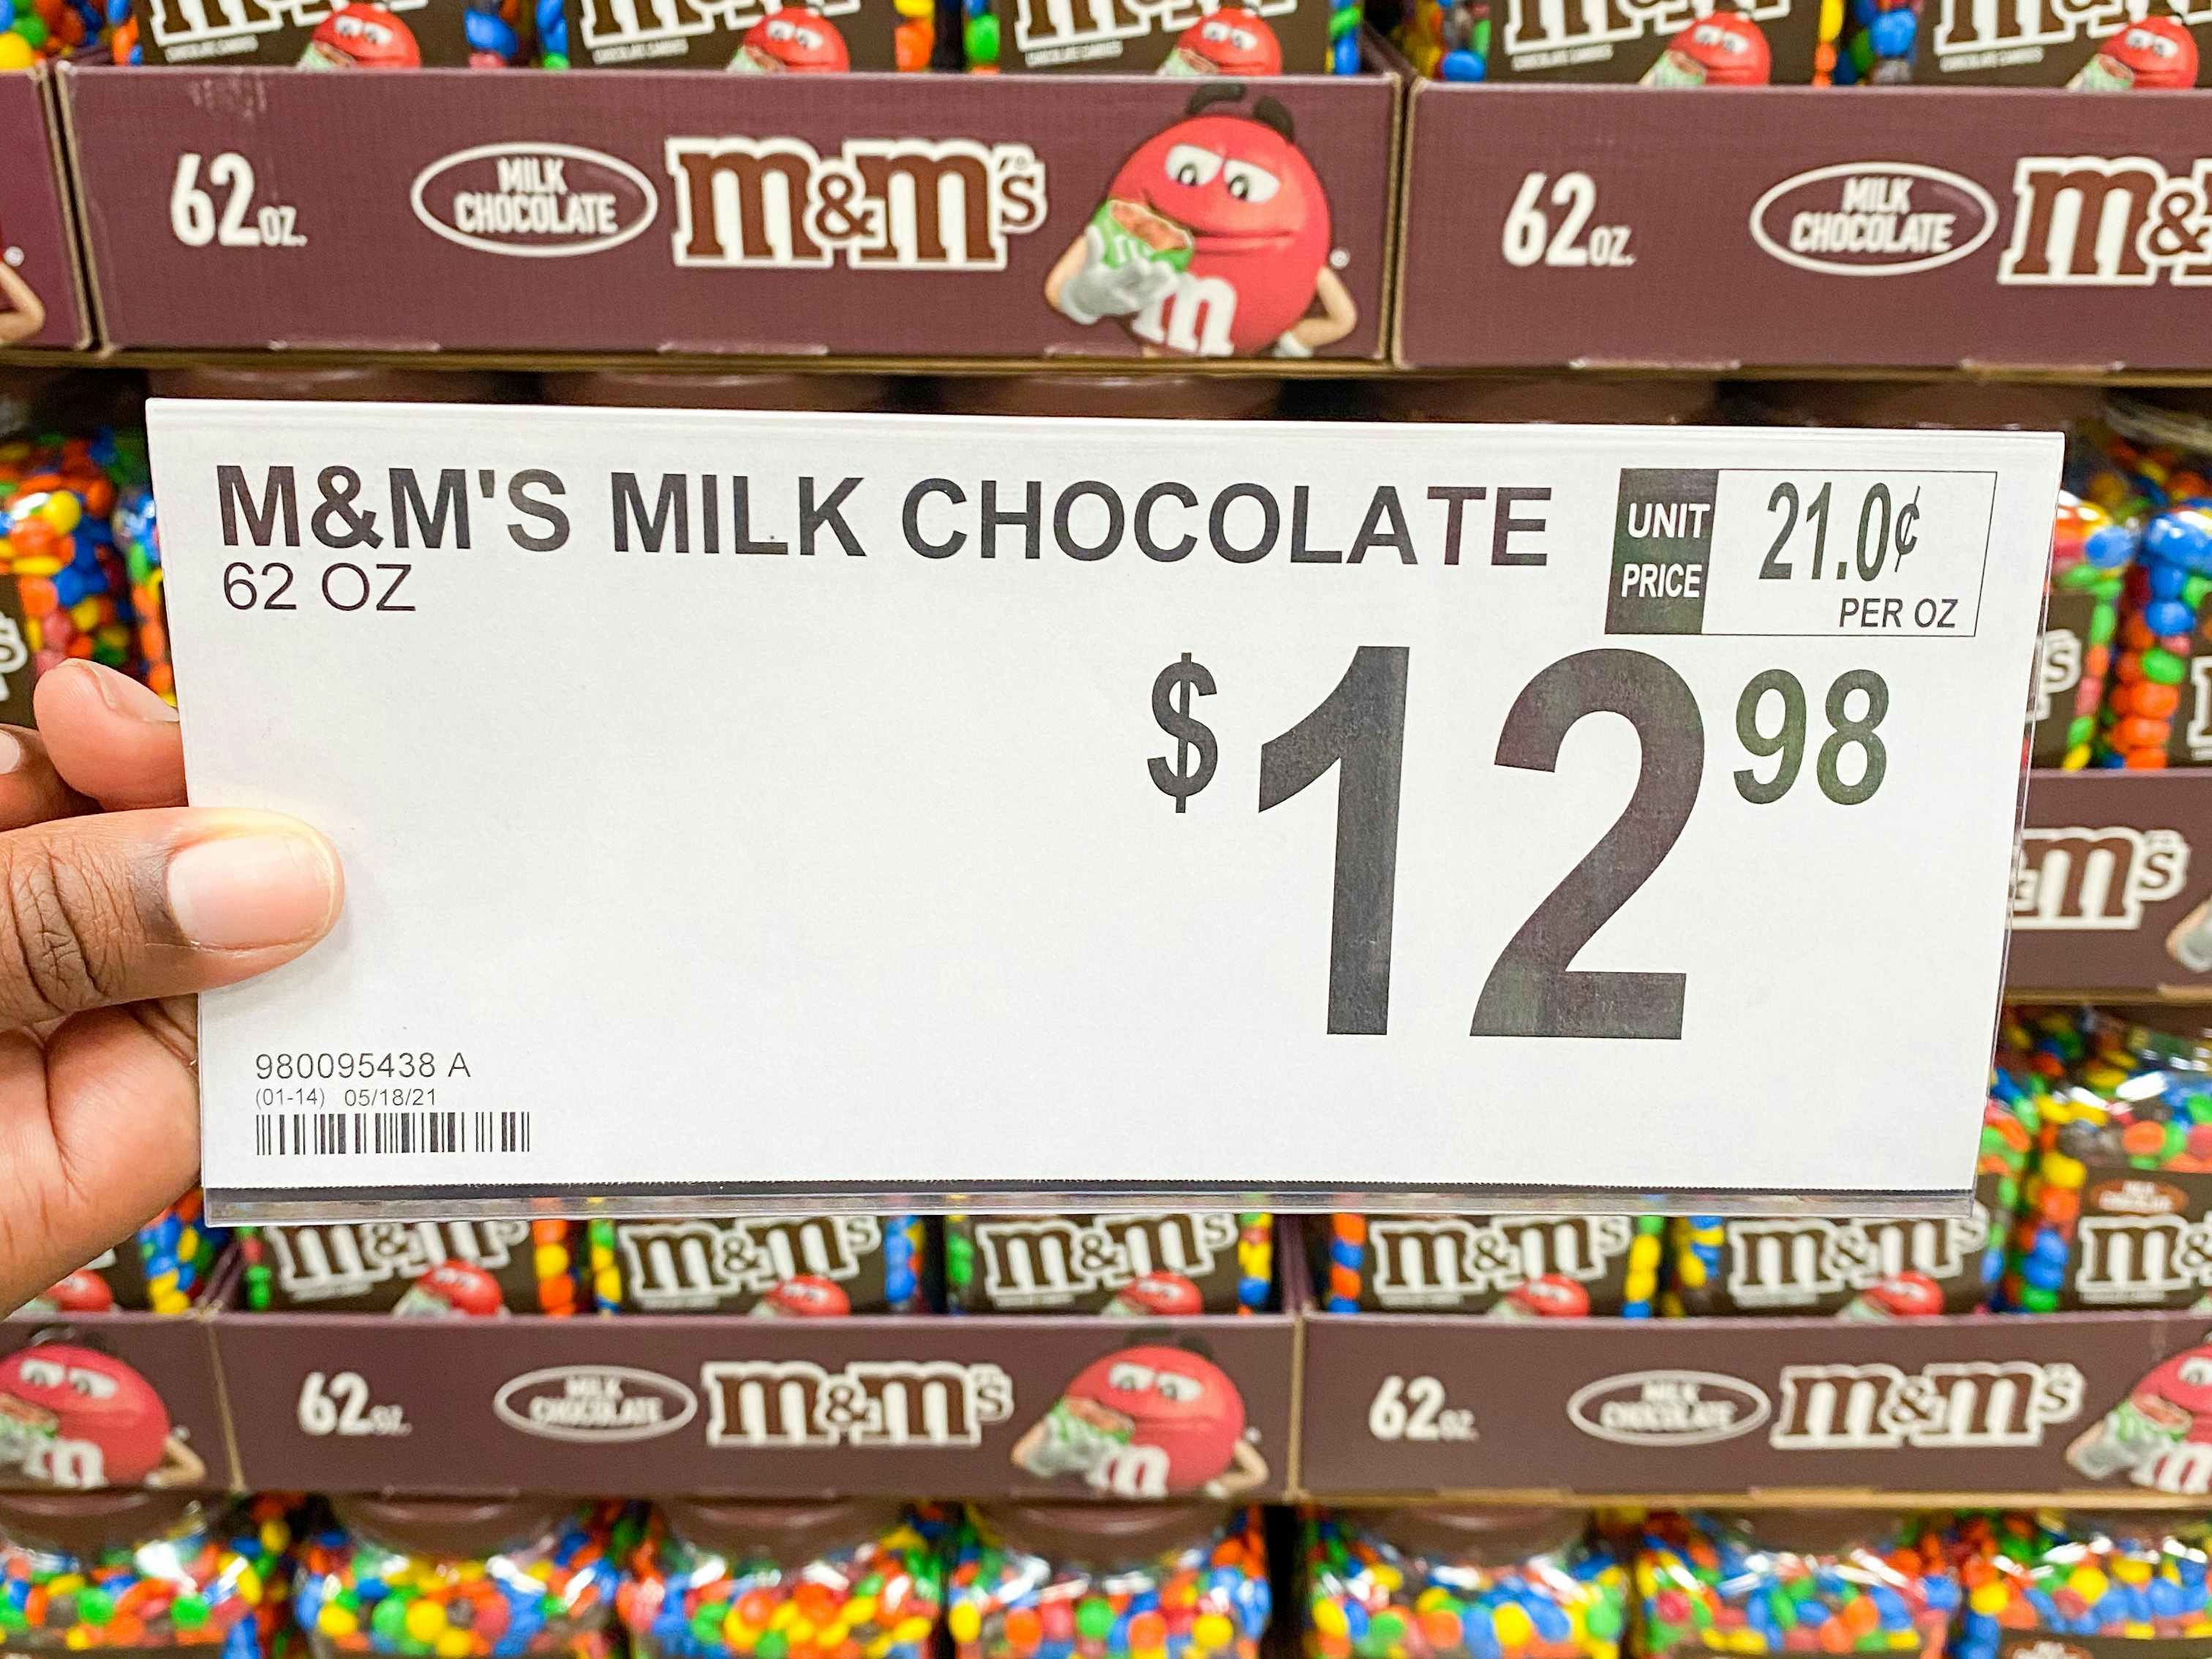 M&Ms Milk Chocolate price tag at Sam's Club